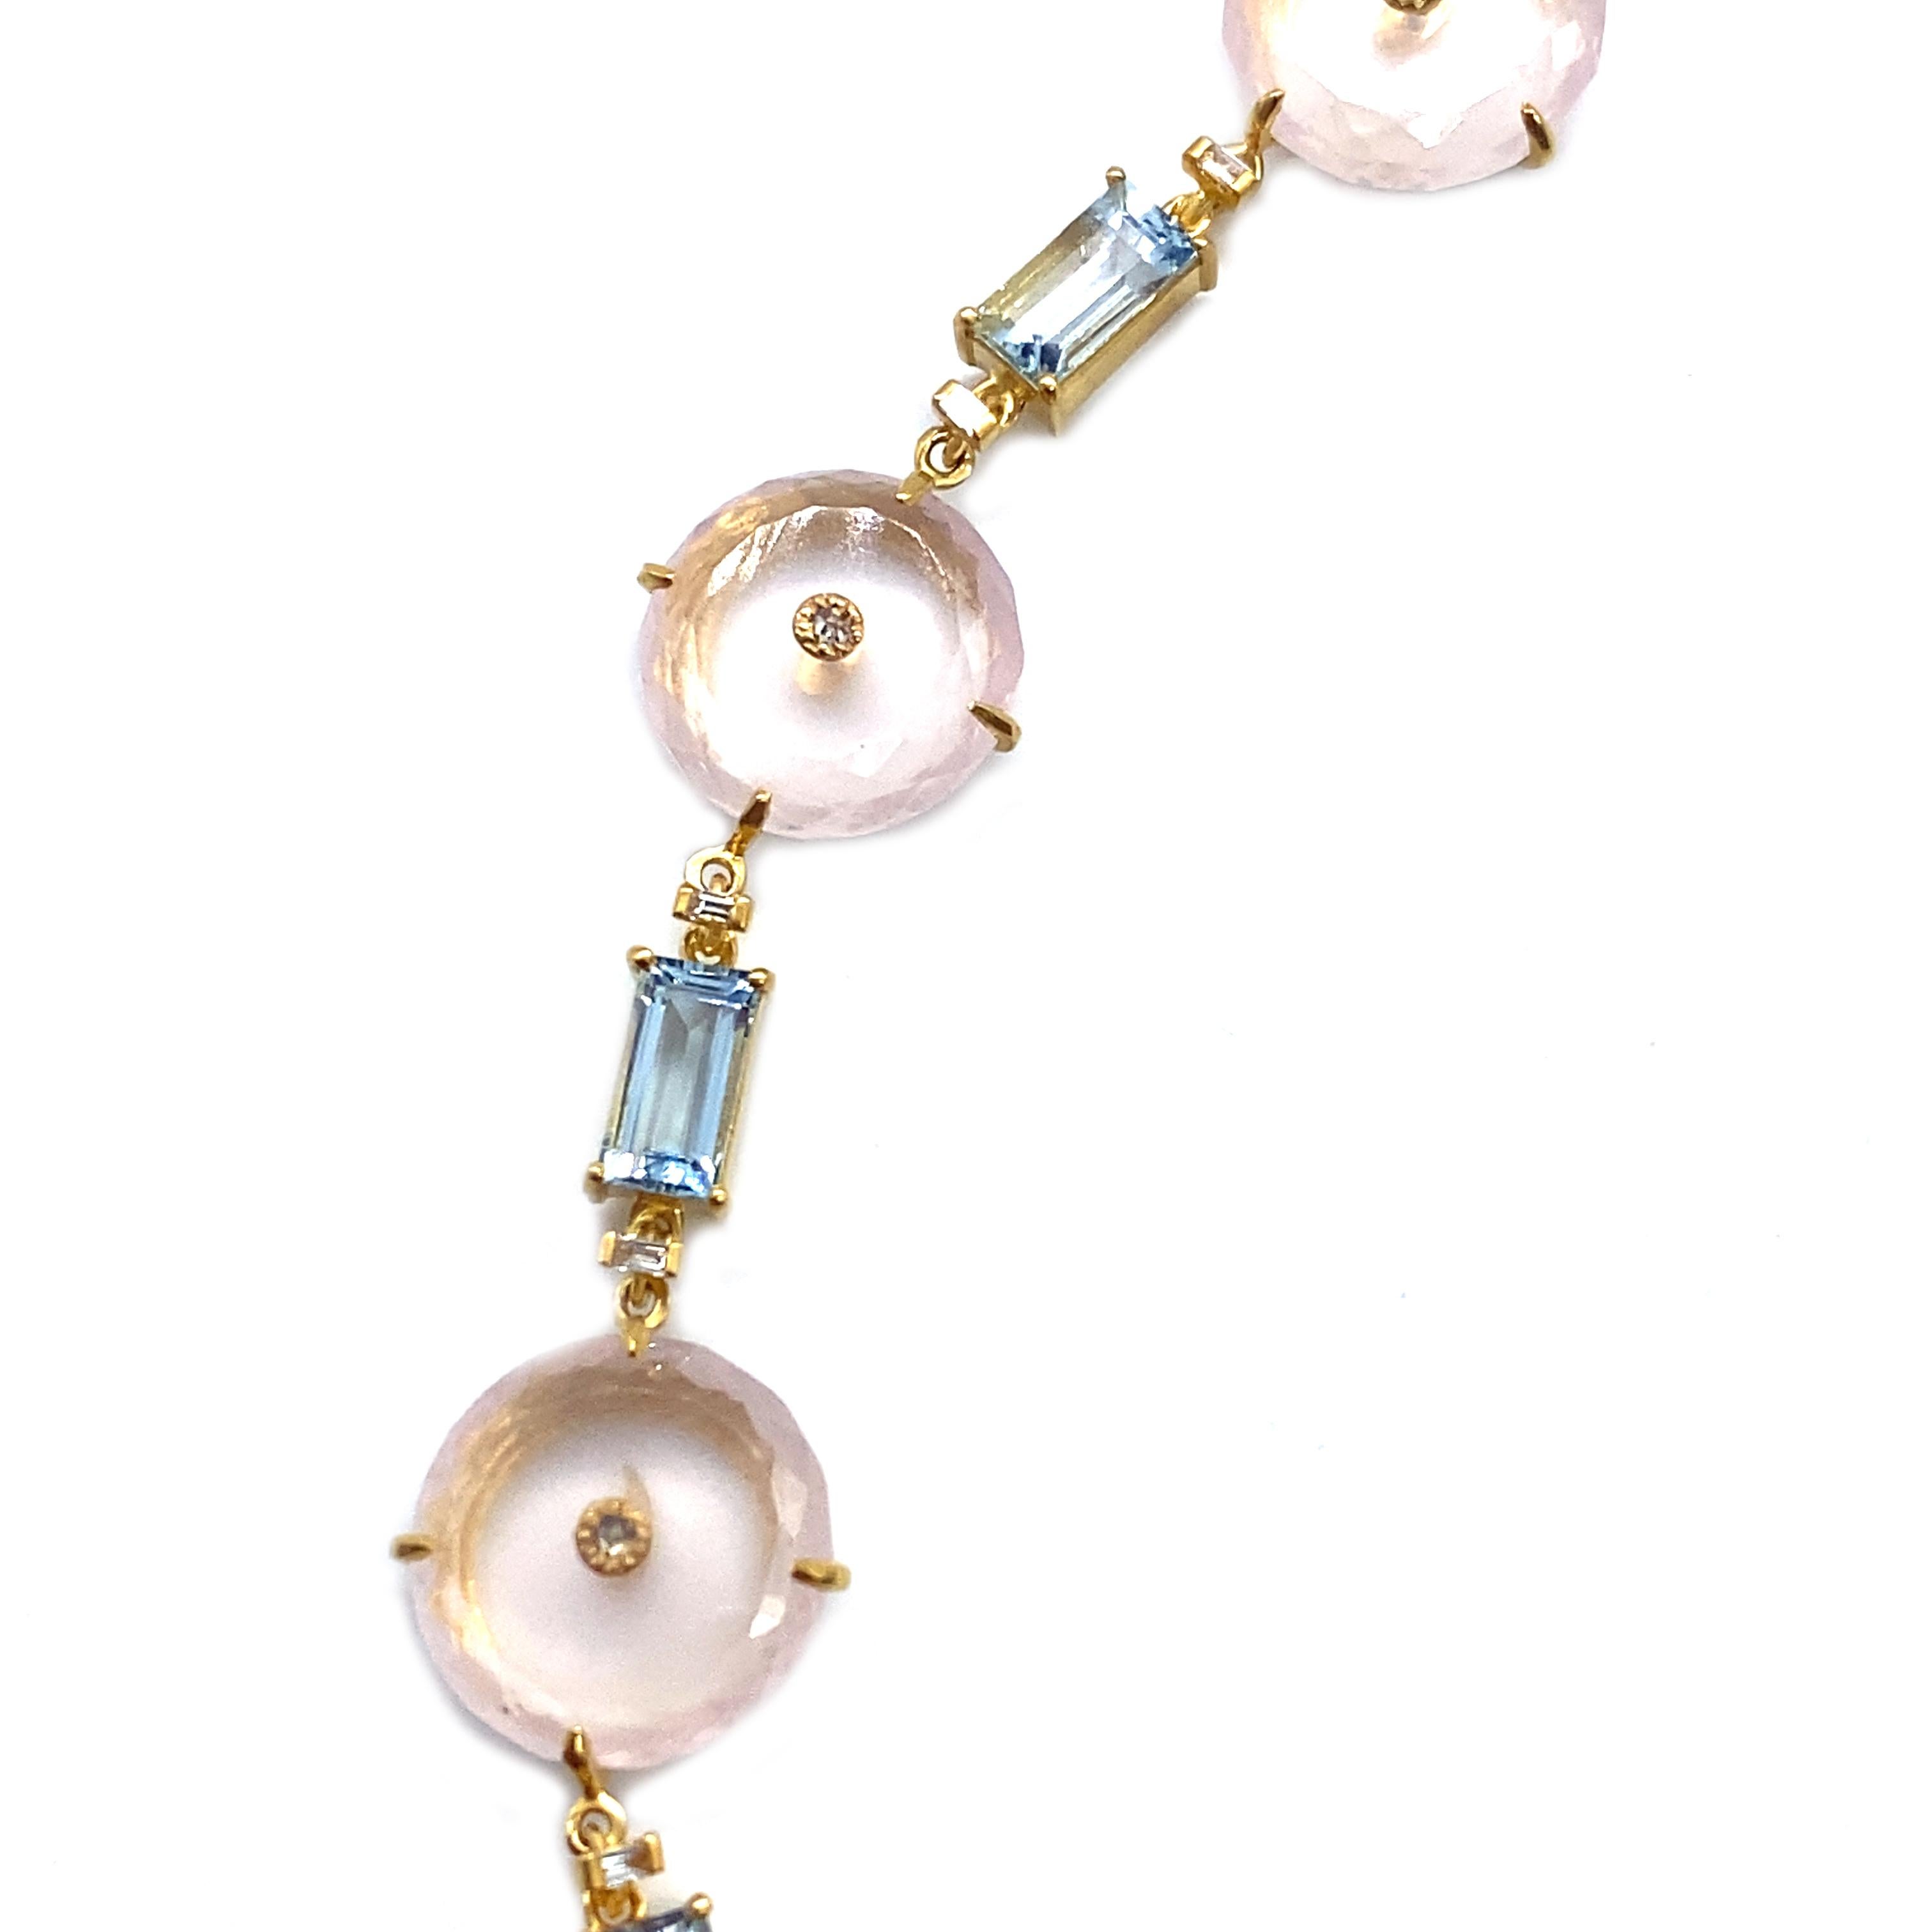 Exquisite 161.53 Carat Rose Quartz Necklace Set in 20 Karat Yellow Gold In New Condition For Sale In Secaucus, NJ